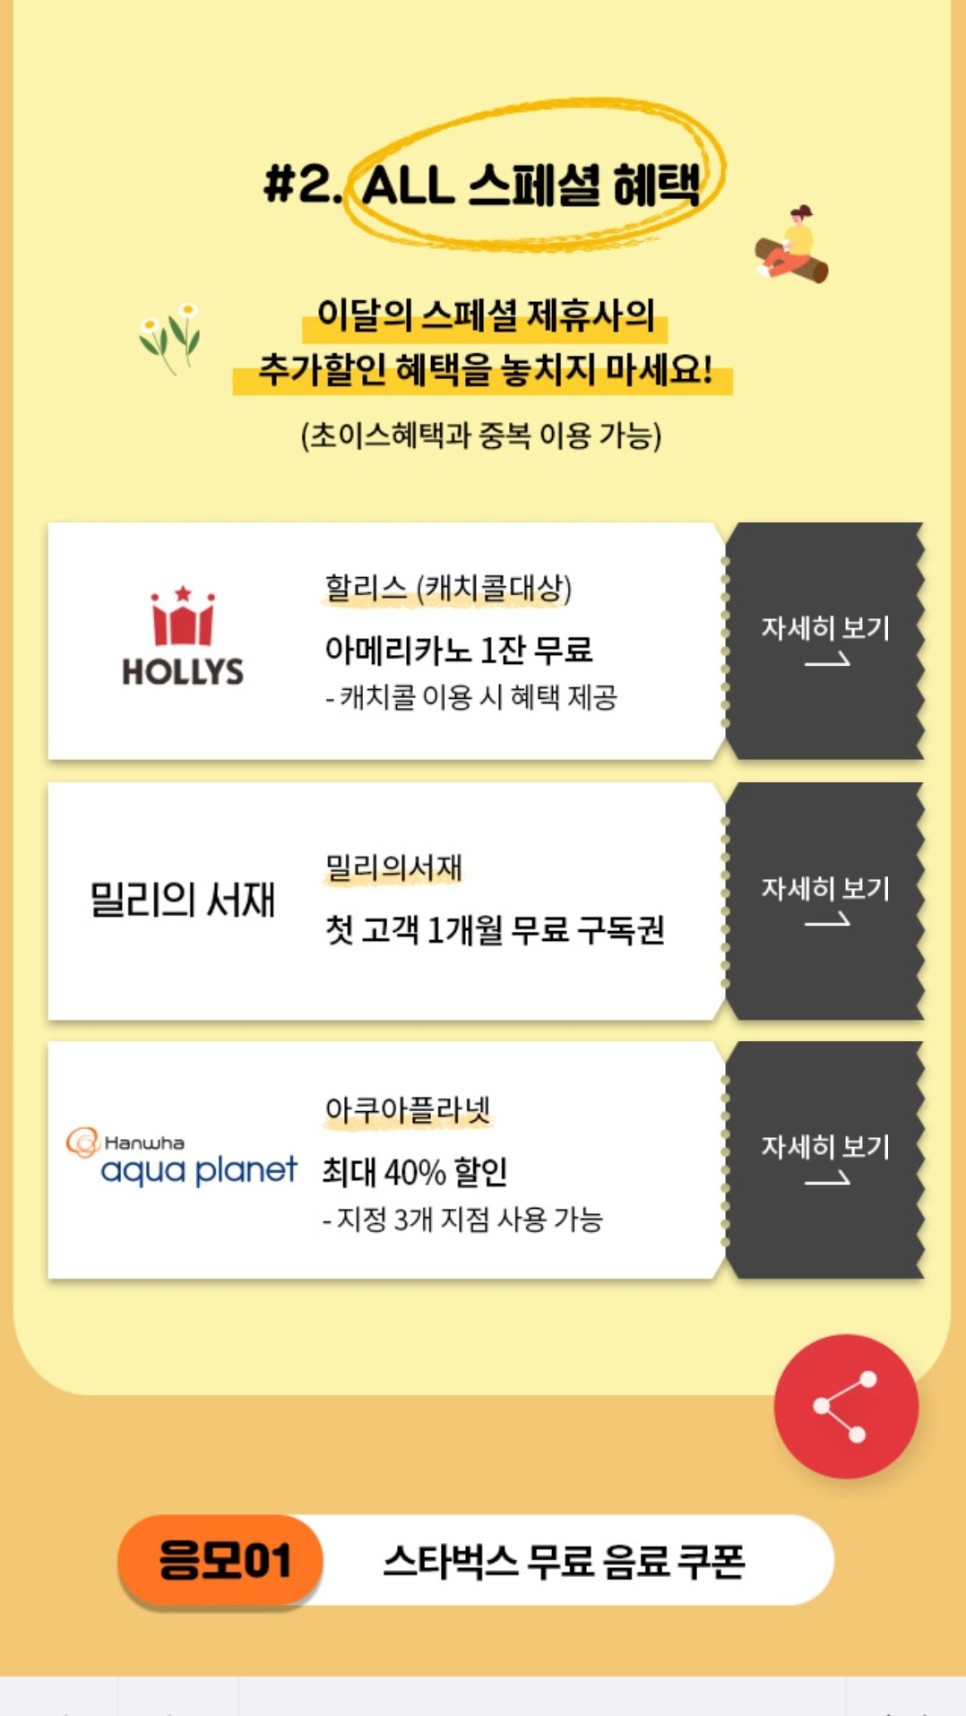 KT 멤버십 11월 혜택 할인 이벤트까지 포인트 알차게 사용해요!